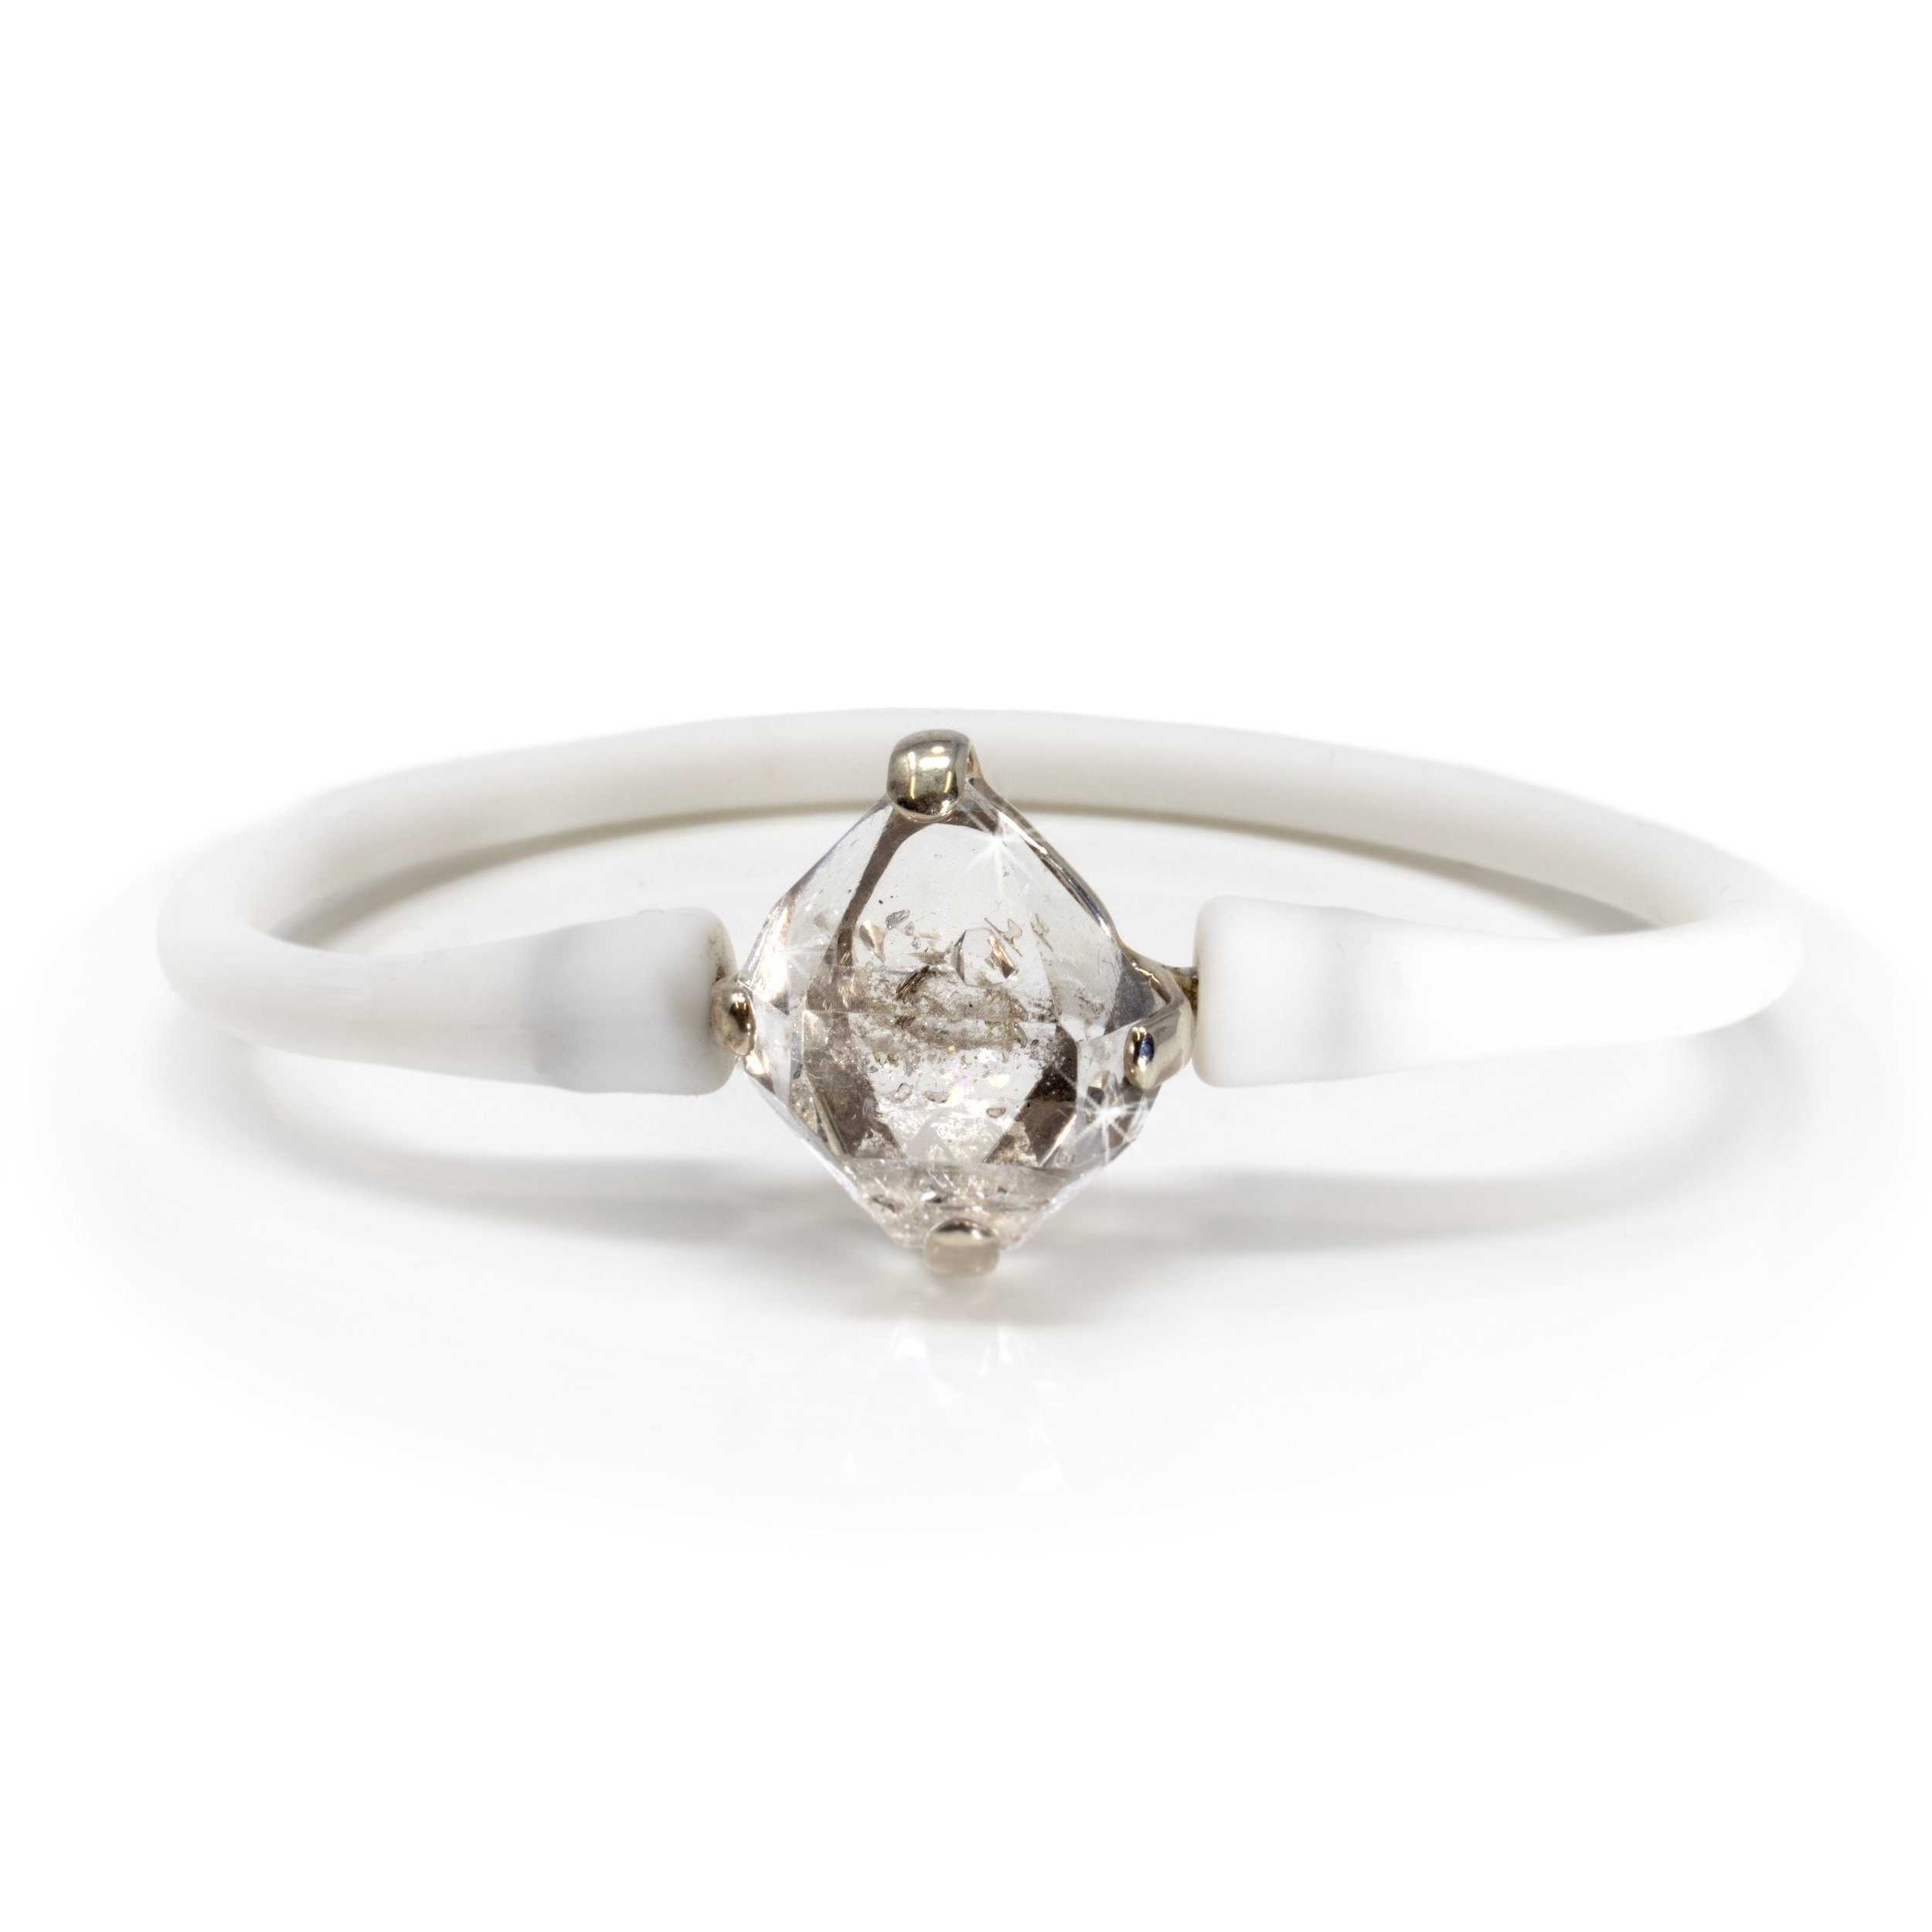 Herkimer Diamond Bangle Bracelet - Prong Set Terminated Crystal Set On White Silicone Band